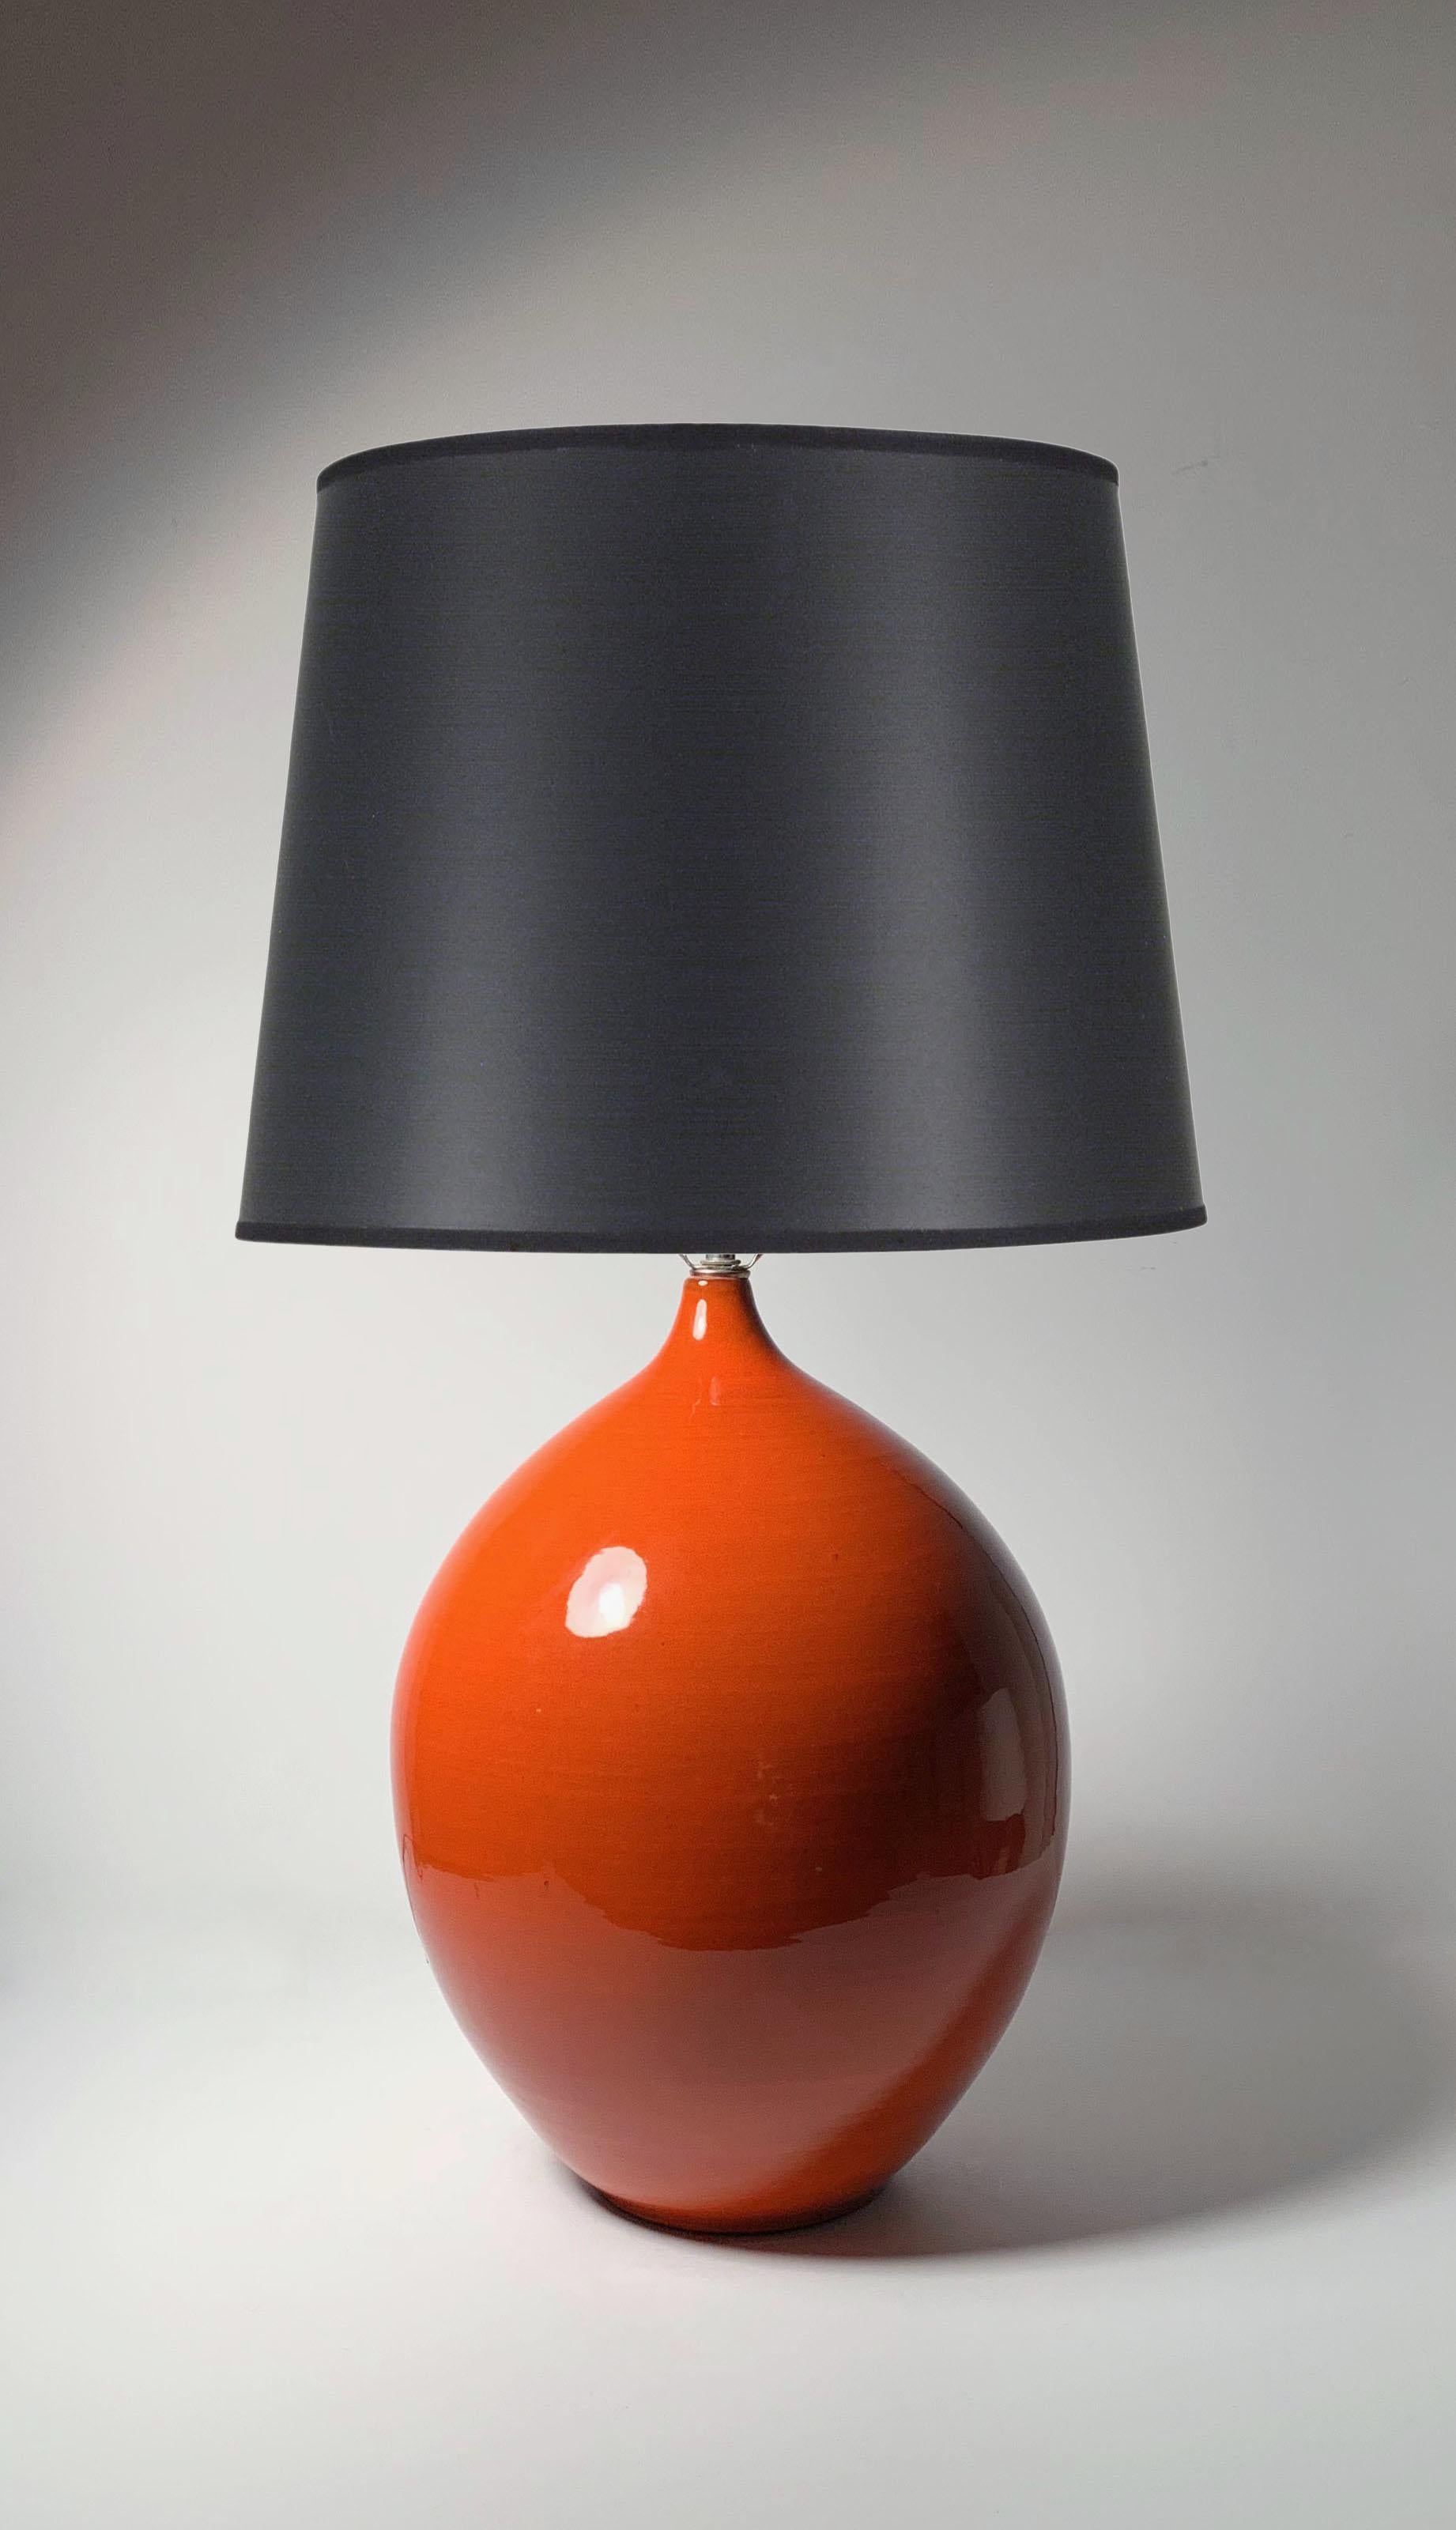 Große Vintage-Keramik-Lampe aus der Mitte des Jahrhunderts nach Art von Jacques und Dani Ruelland. Der Zeitraum von Raymor und Martz. Die Herkunft ist ungewiss. Möglicherweise Französisch.

Keramischer Teil allein  ist knapp 17